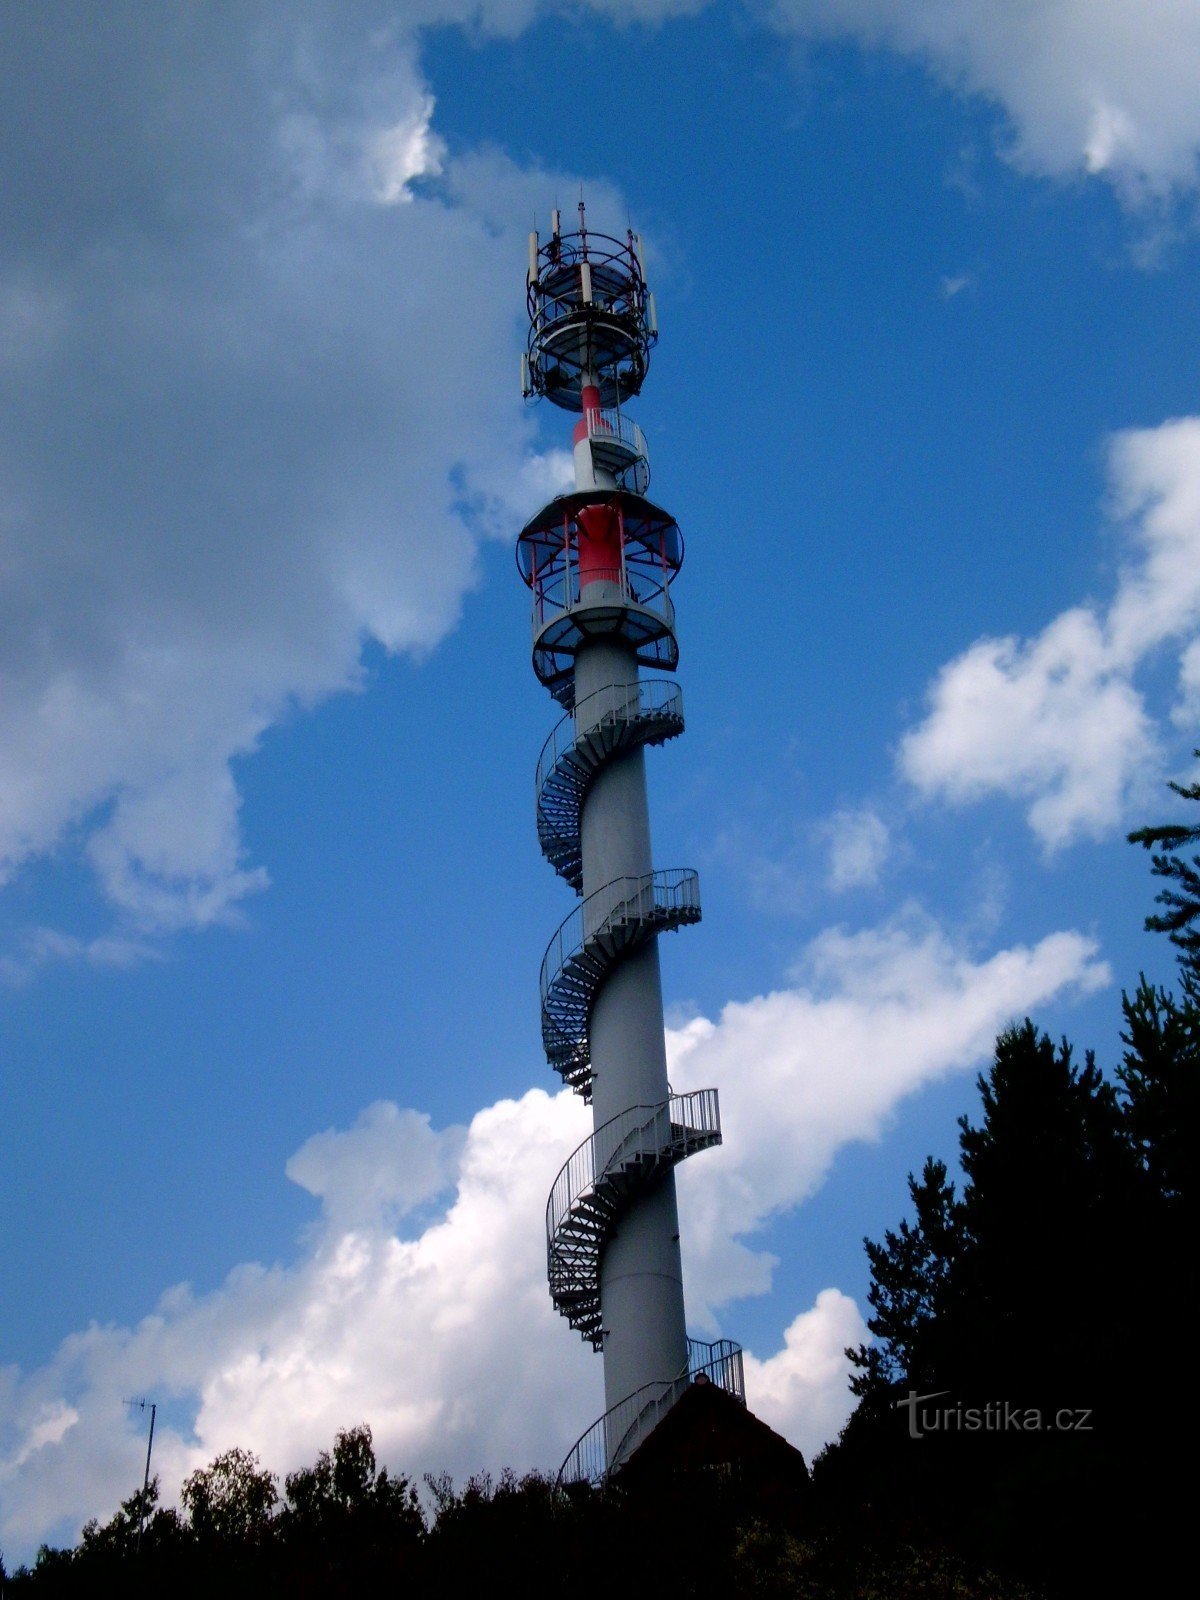 From Nespek via the Ládví observation tower to Ládví